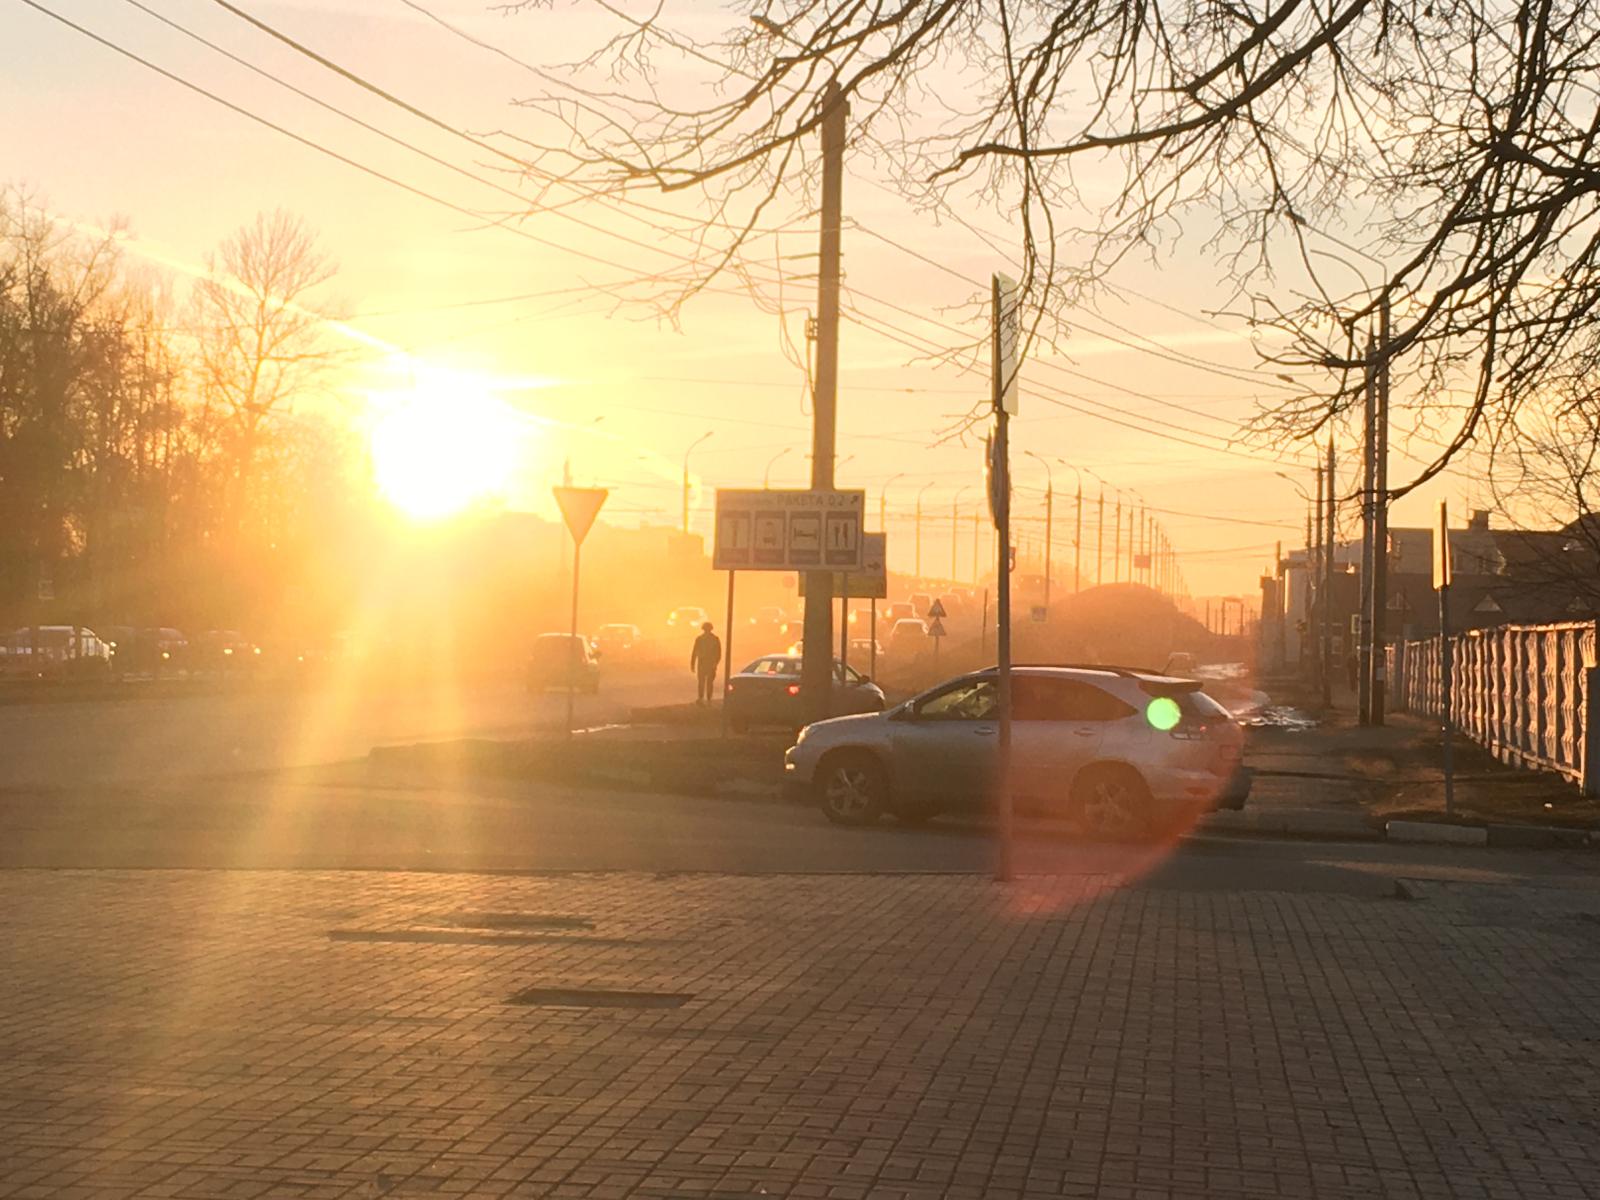 Брянск попал на 5 строчку в рейтинге российских городов с самым чистым воздухом